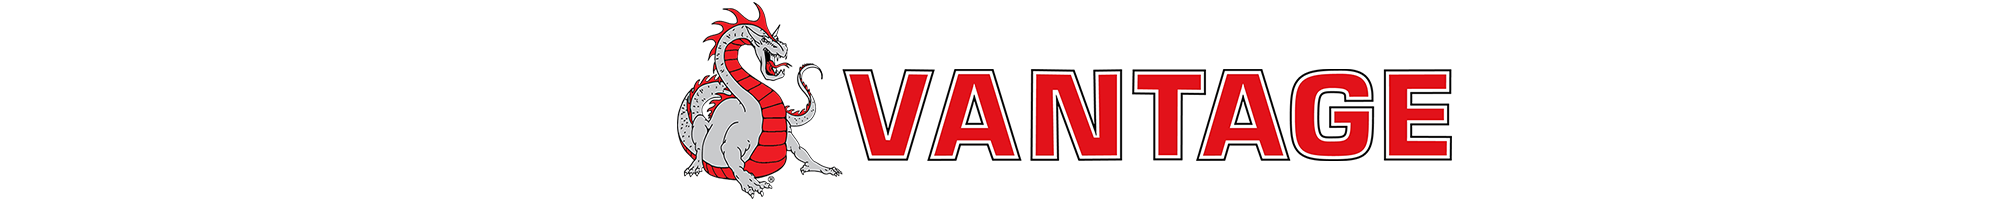 vantage logo with dragon header